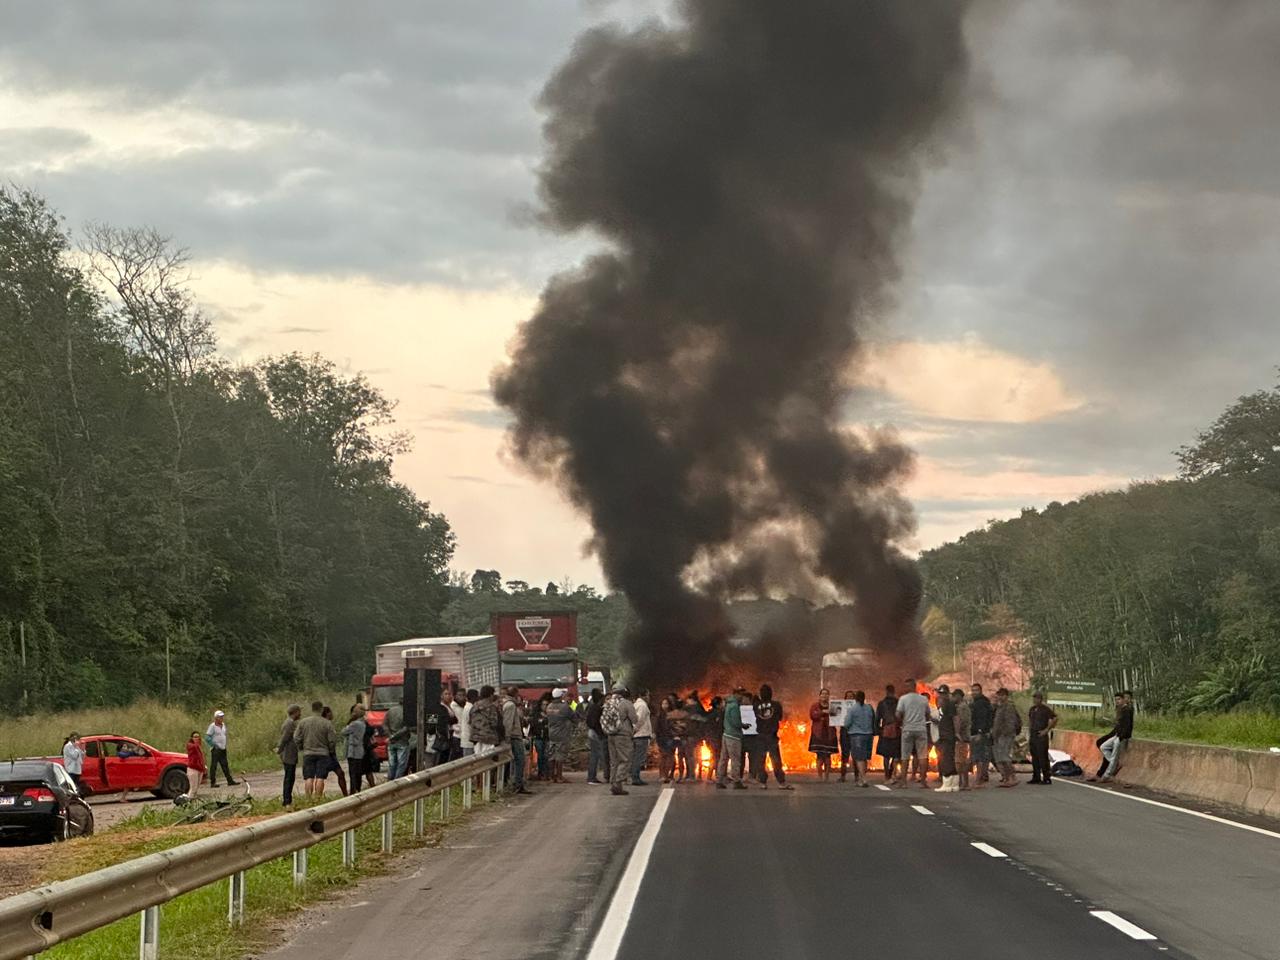 Manifestação de moradores aconteceu na região de Seringal, em VilaVelha. Eles alegam os últimos acidentes registrados nas imediações motivaram o protesto